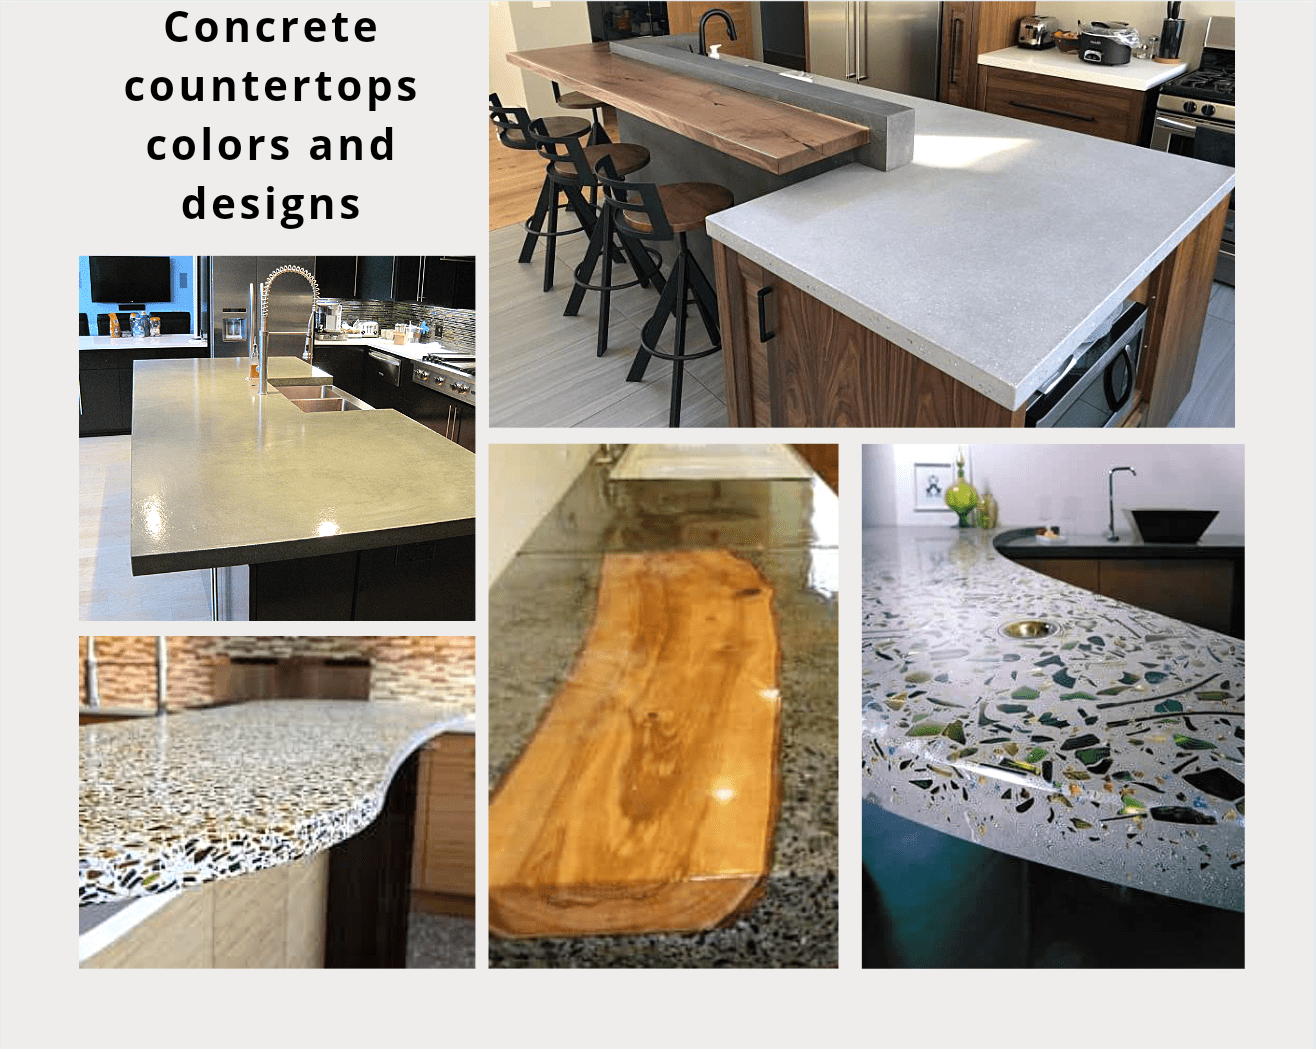 Concrete countertops